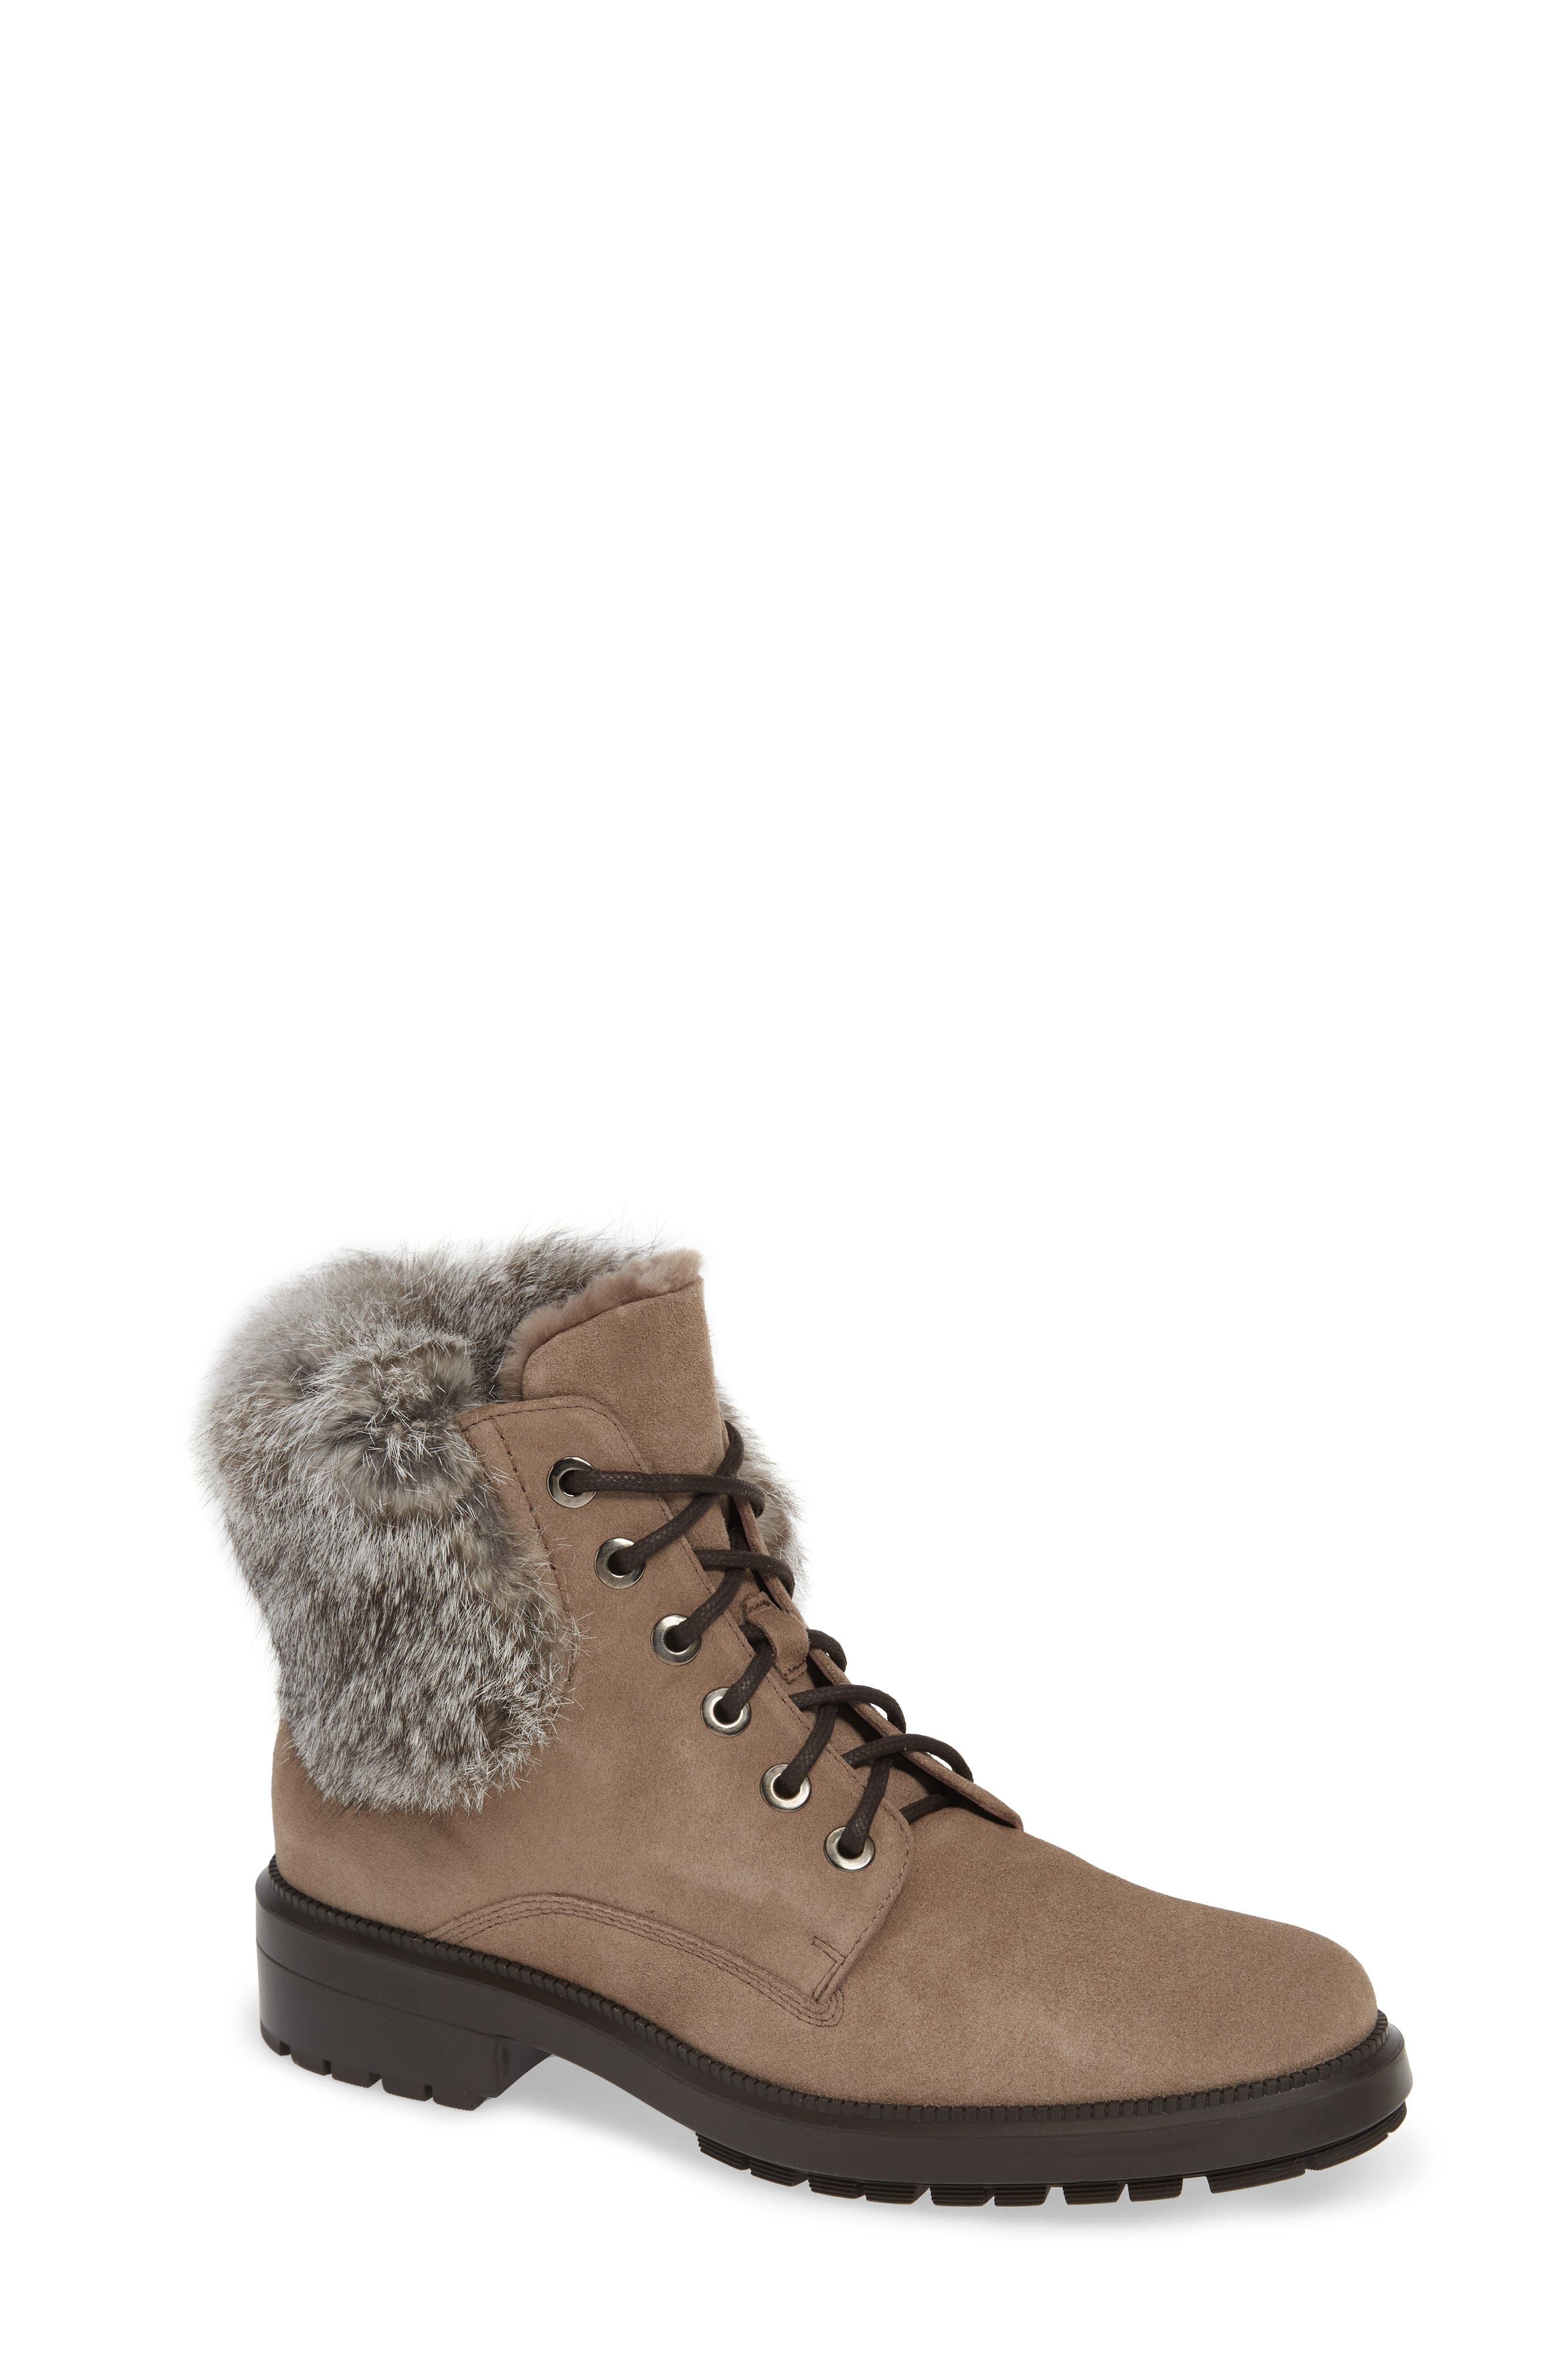 aquatalia fur lined boots